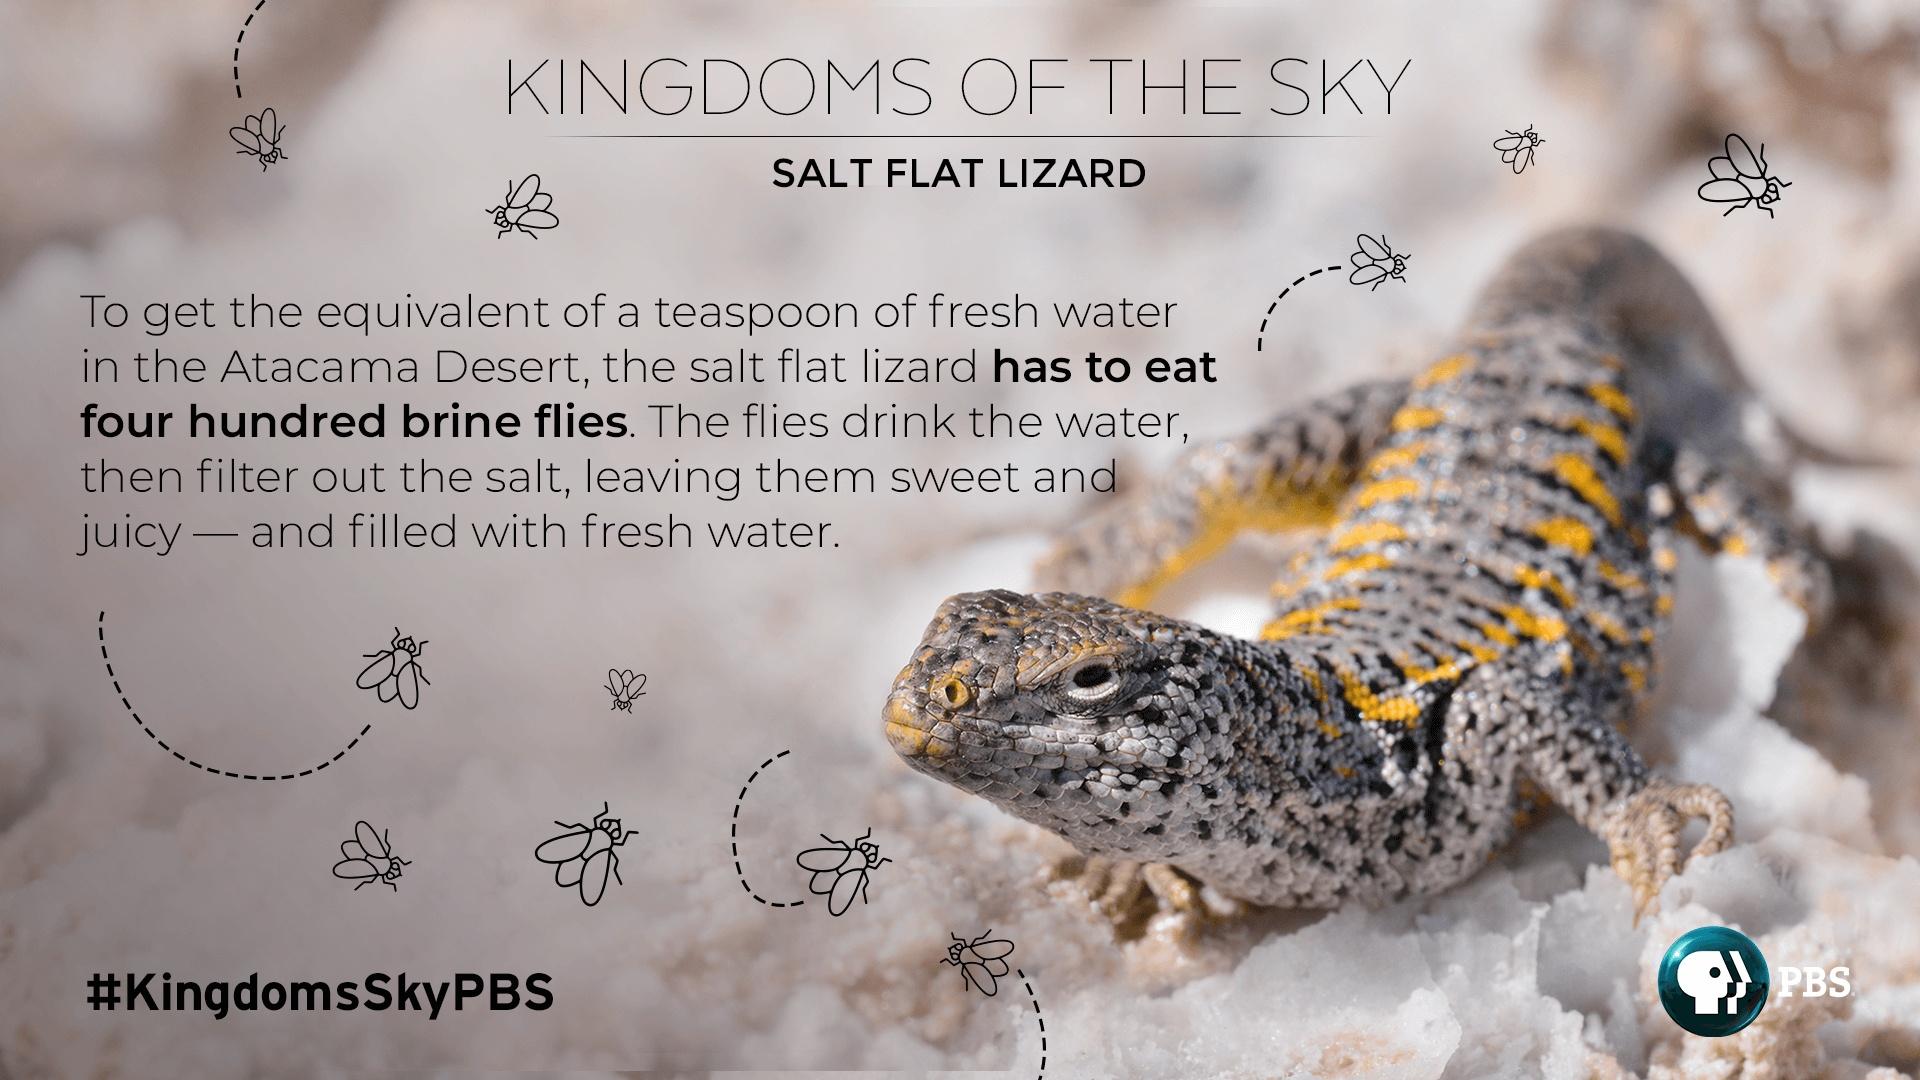 A salt flat lizard